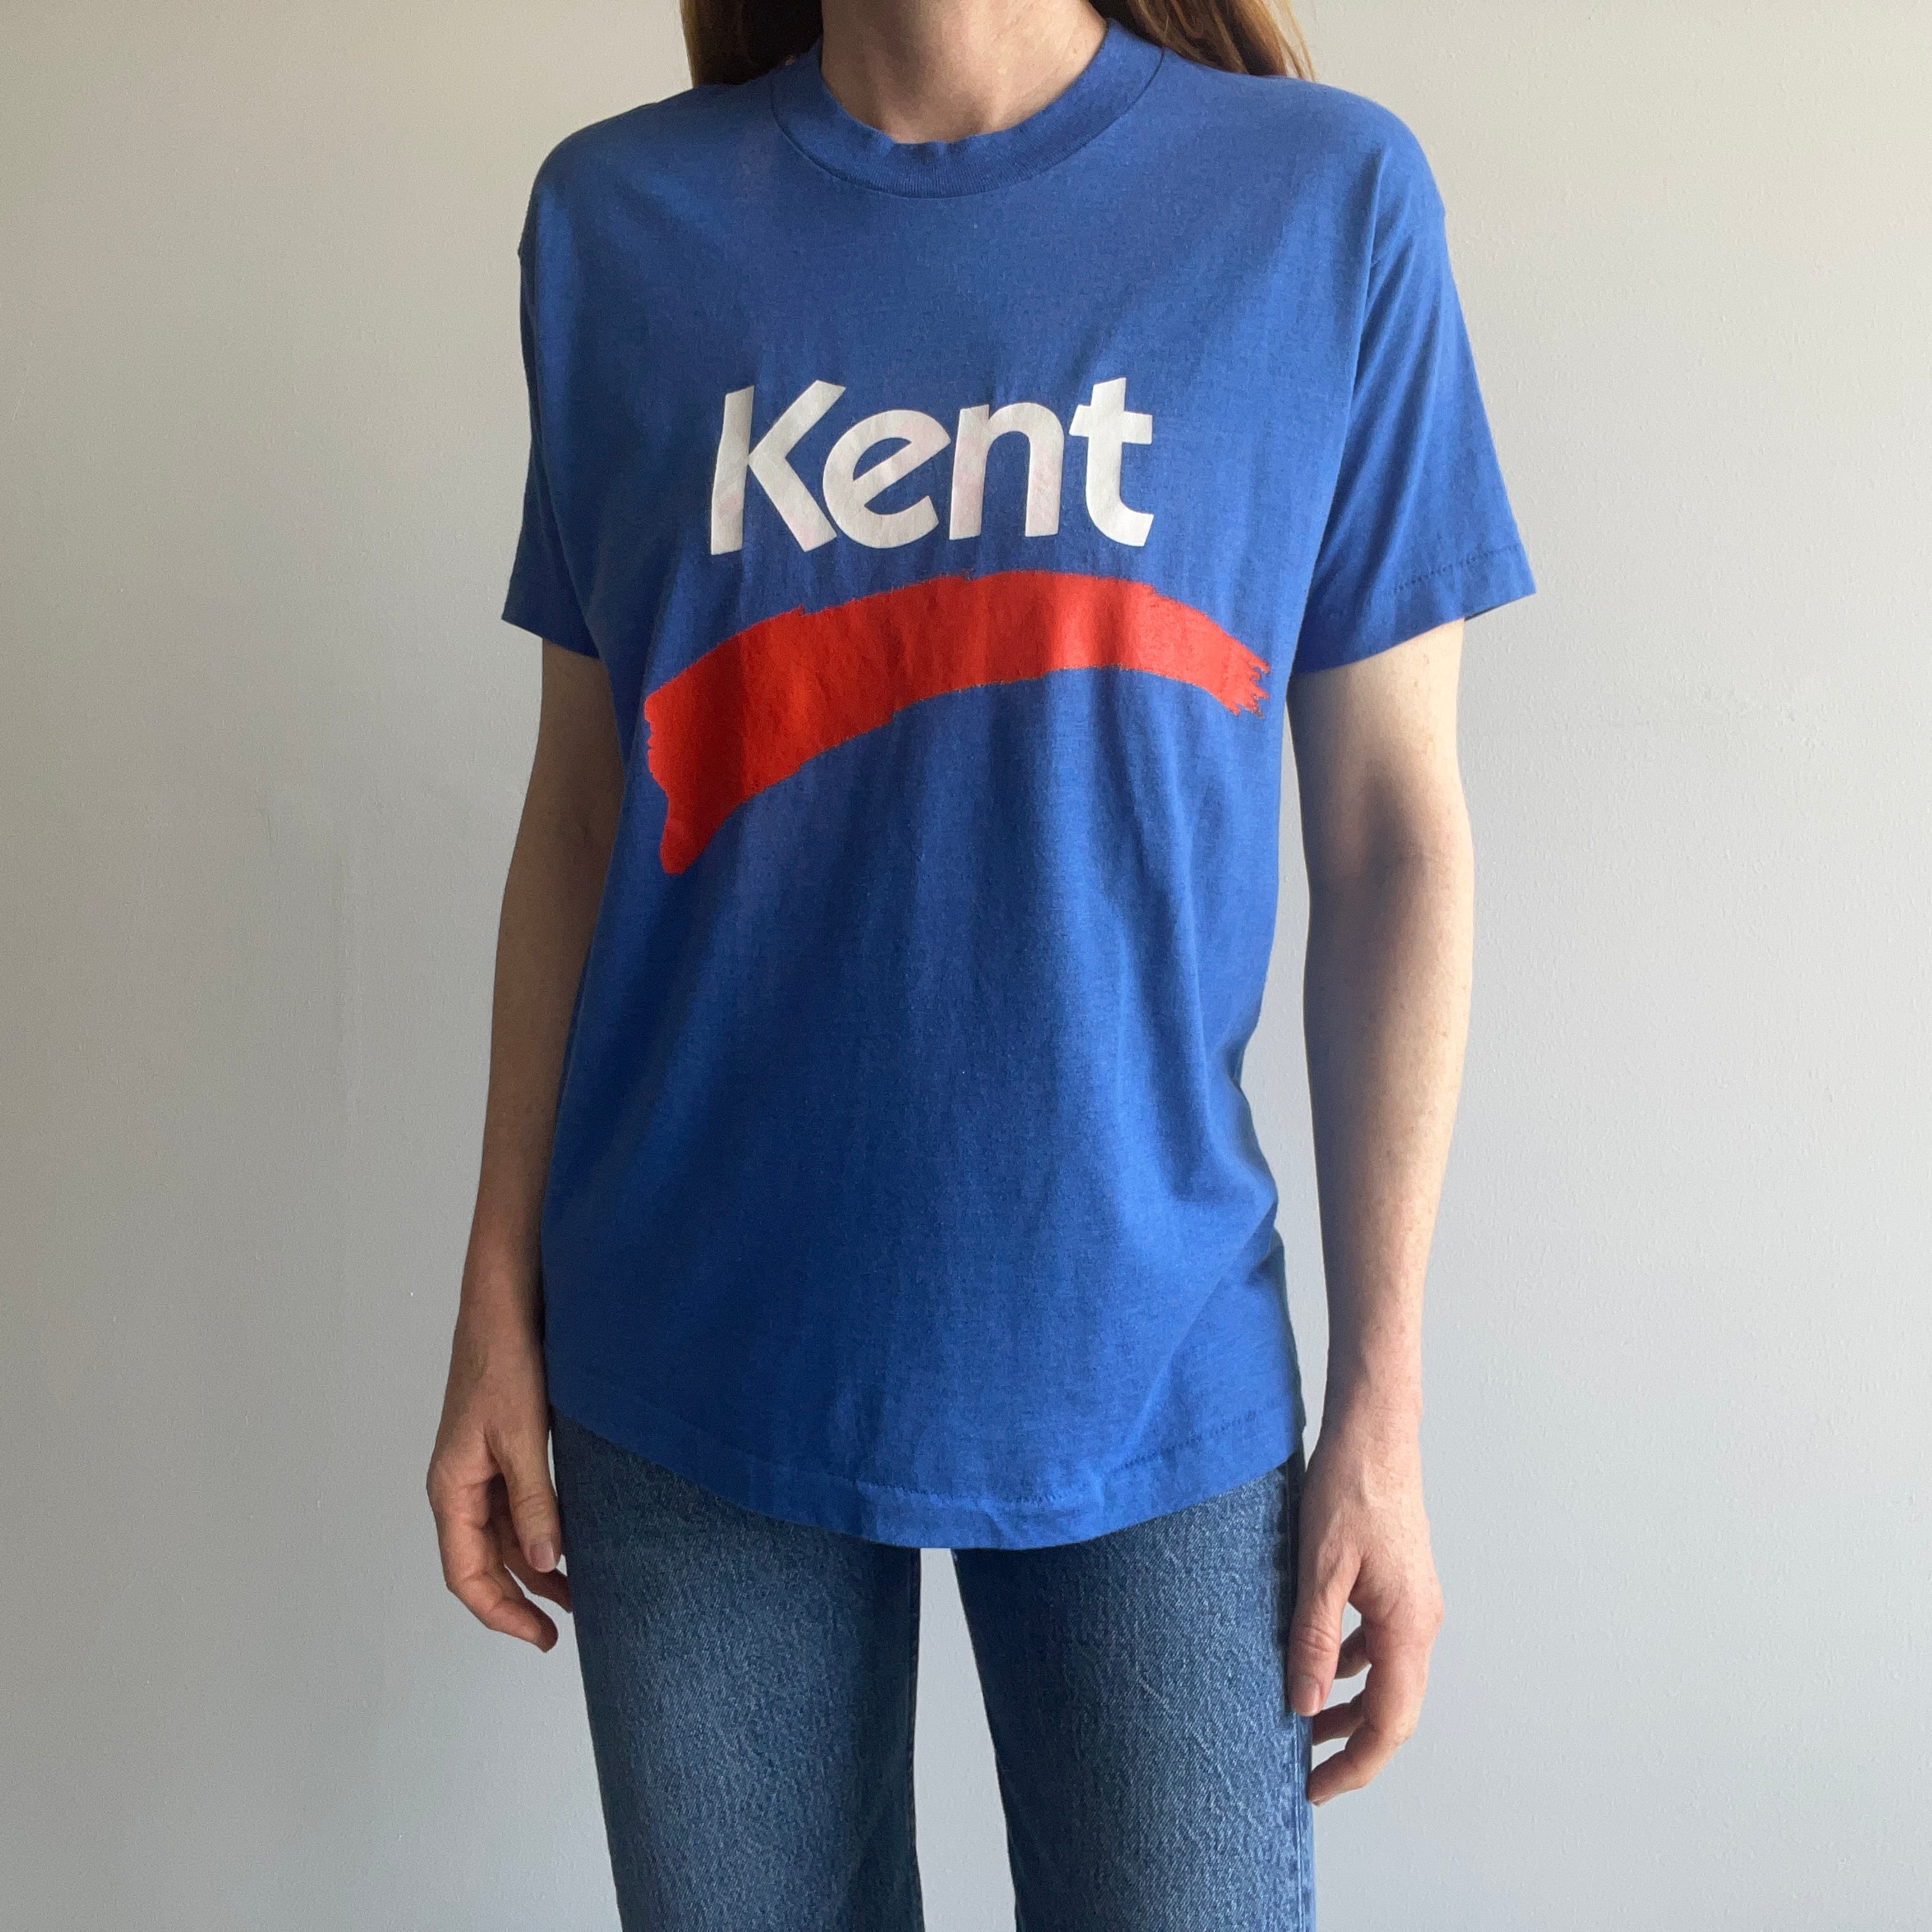 1980s Kent (University?) T-Shirt